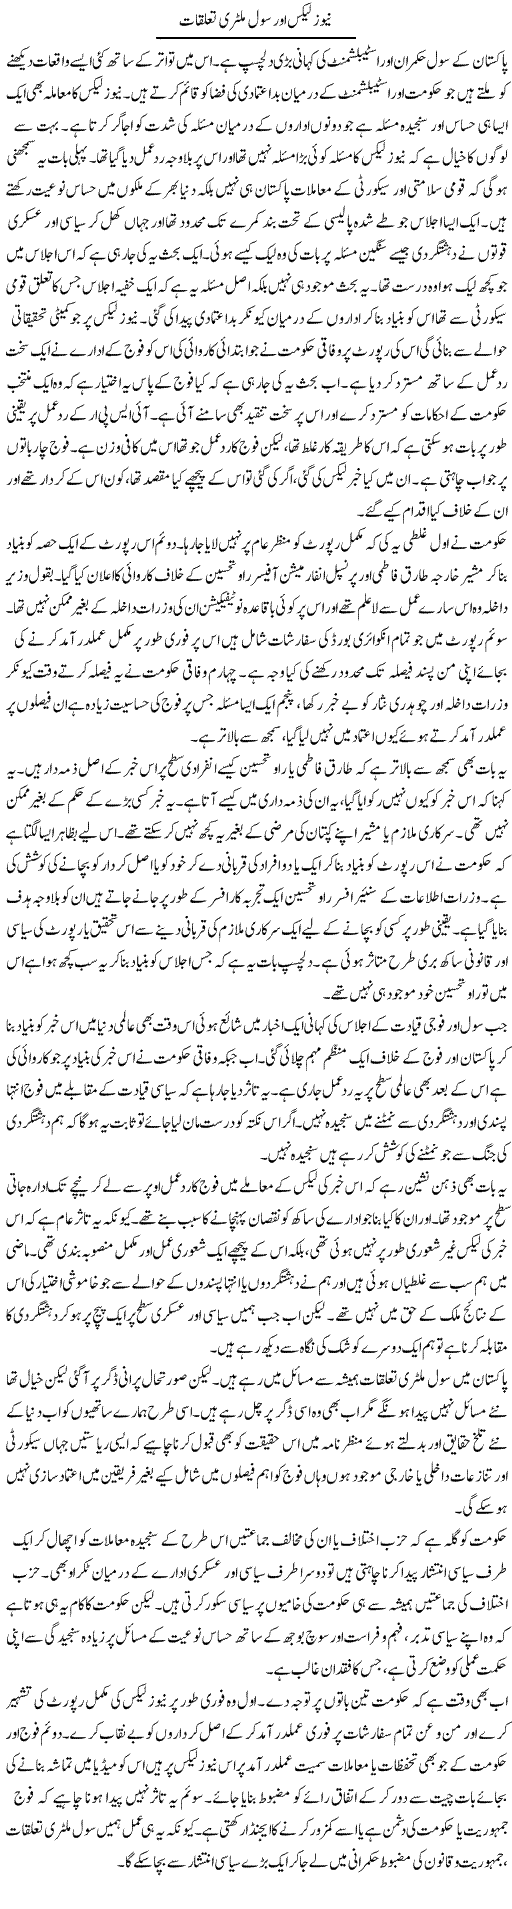 News Leaks Aur Civil Military Taluqaat | Salman Abid | Daily Urdu Columns